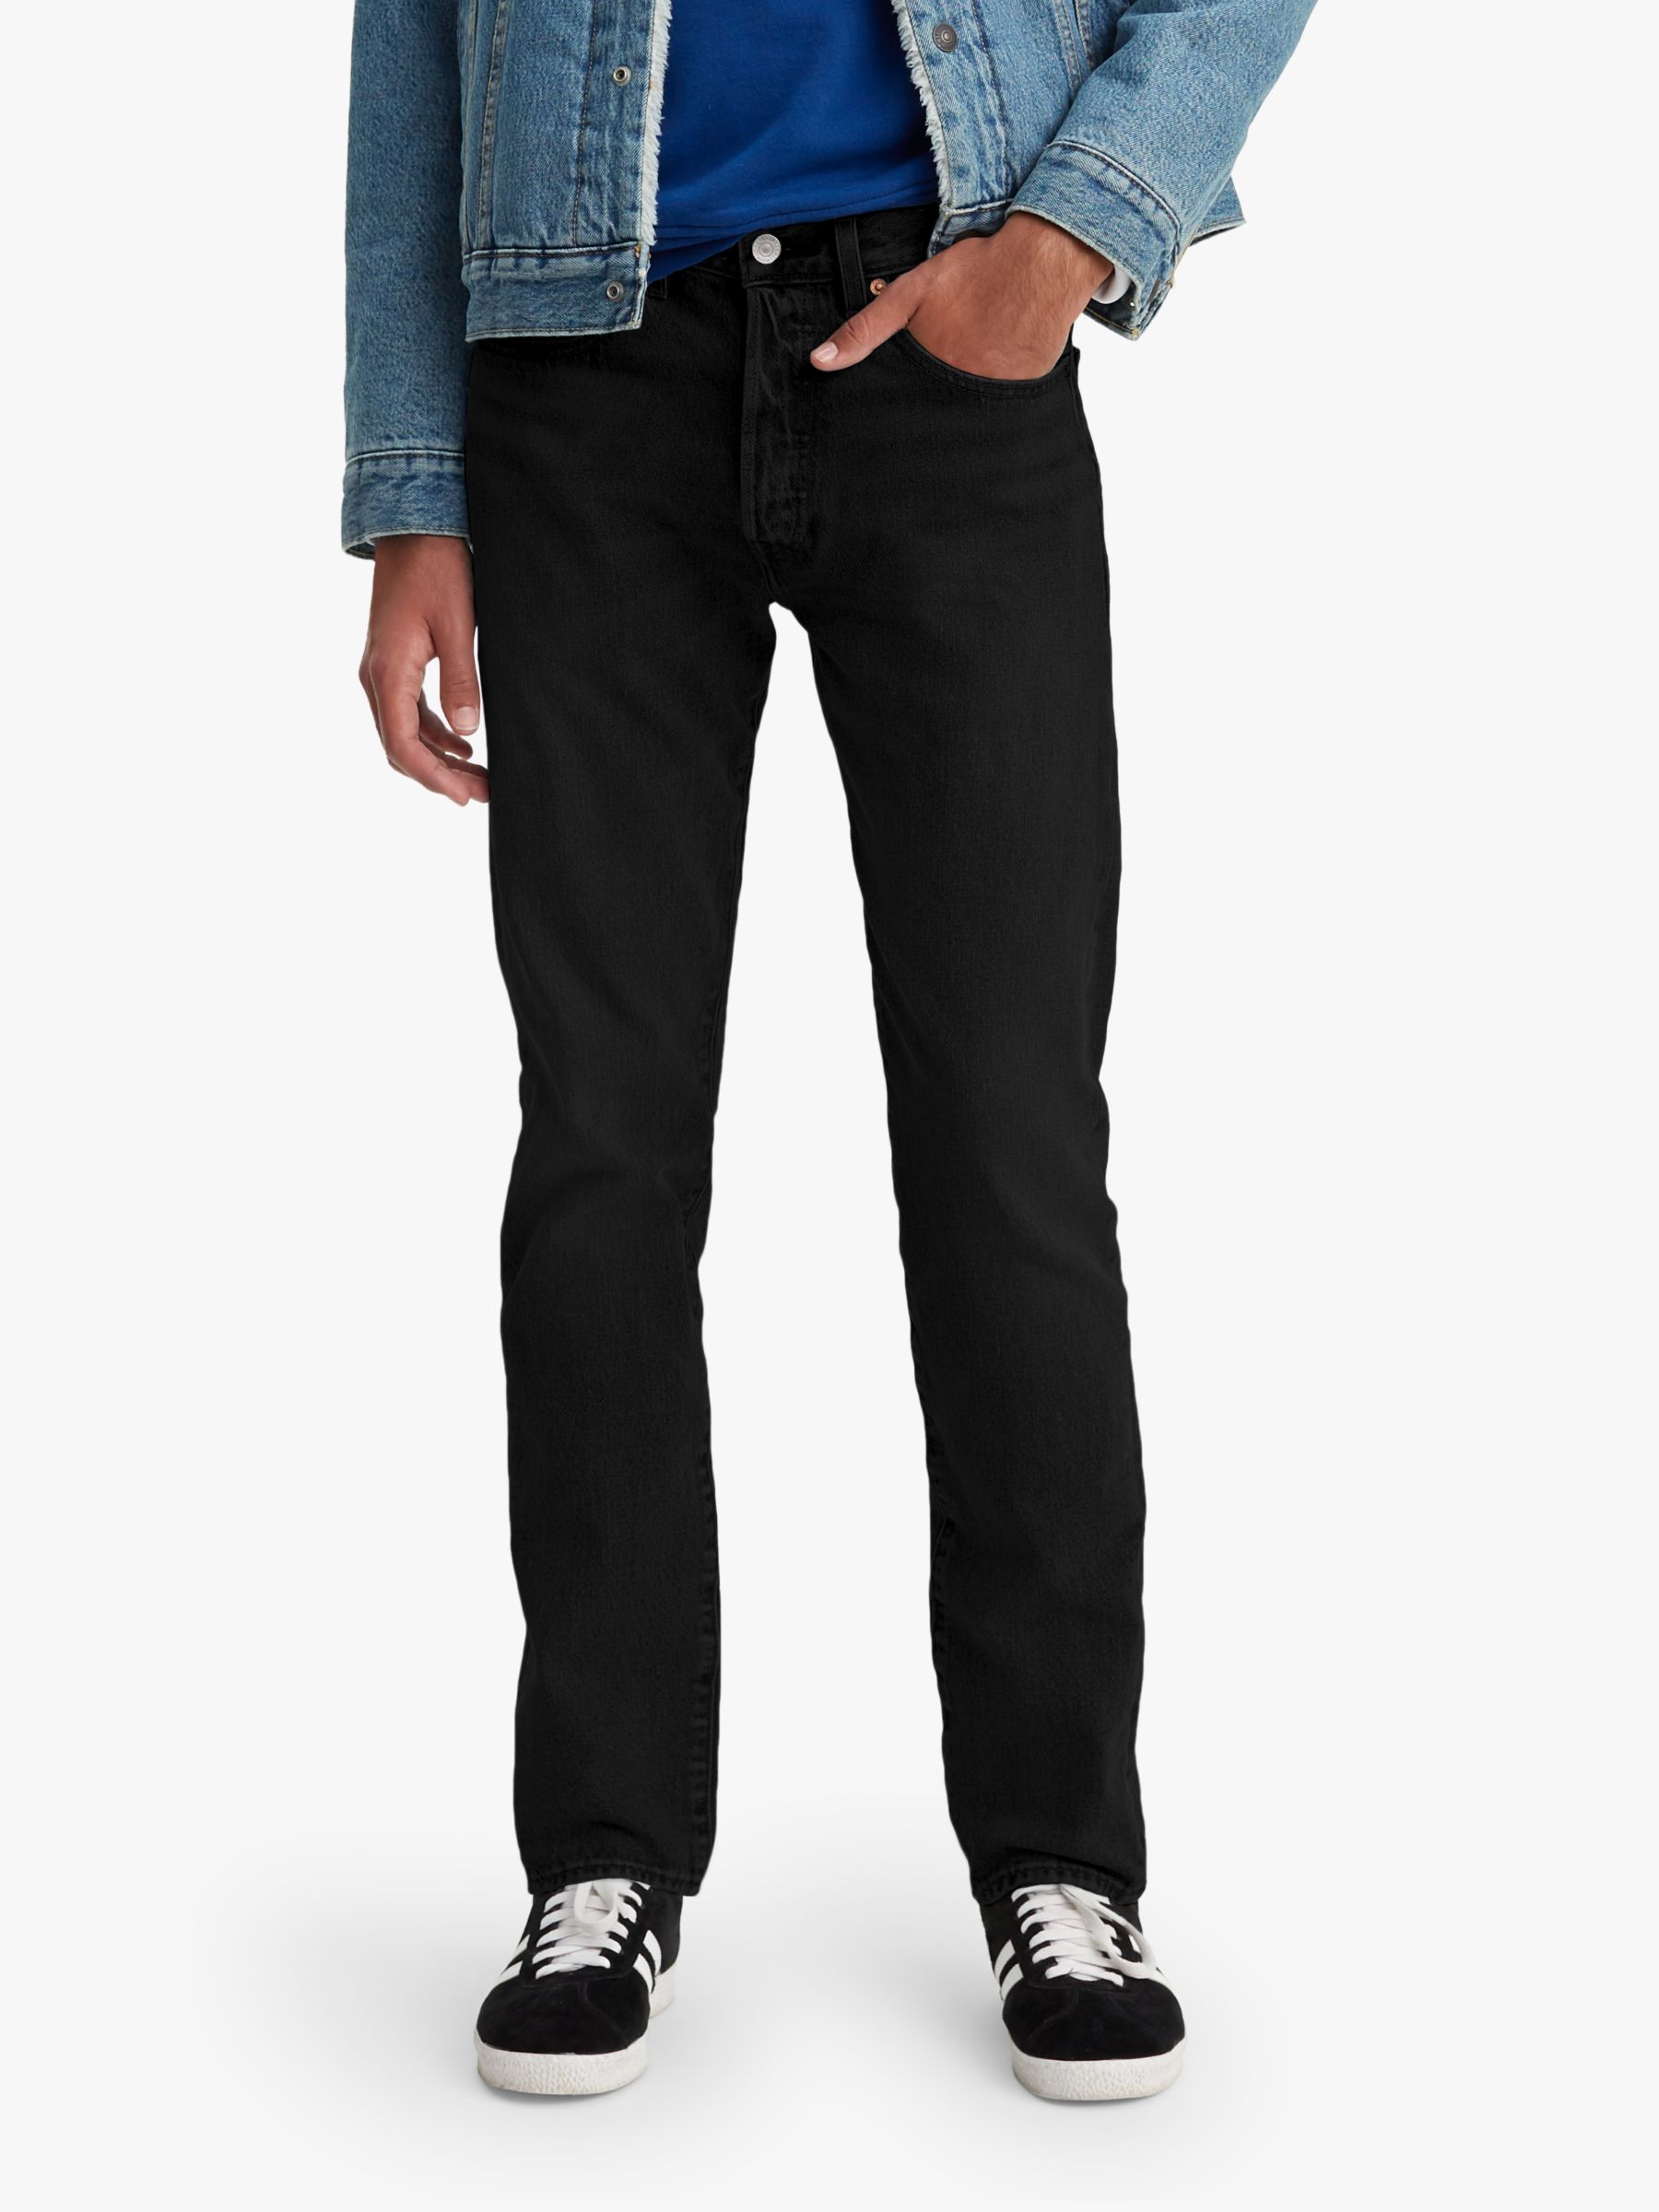 Descubrir 80+ imagen levi's men's 501 tapered fit jeans - Thptnganamst ...